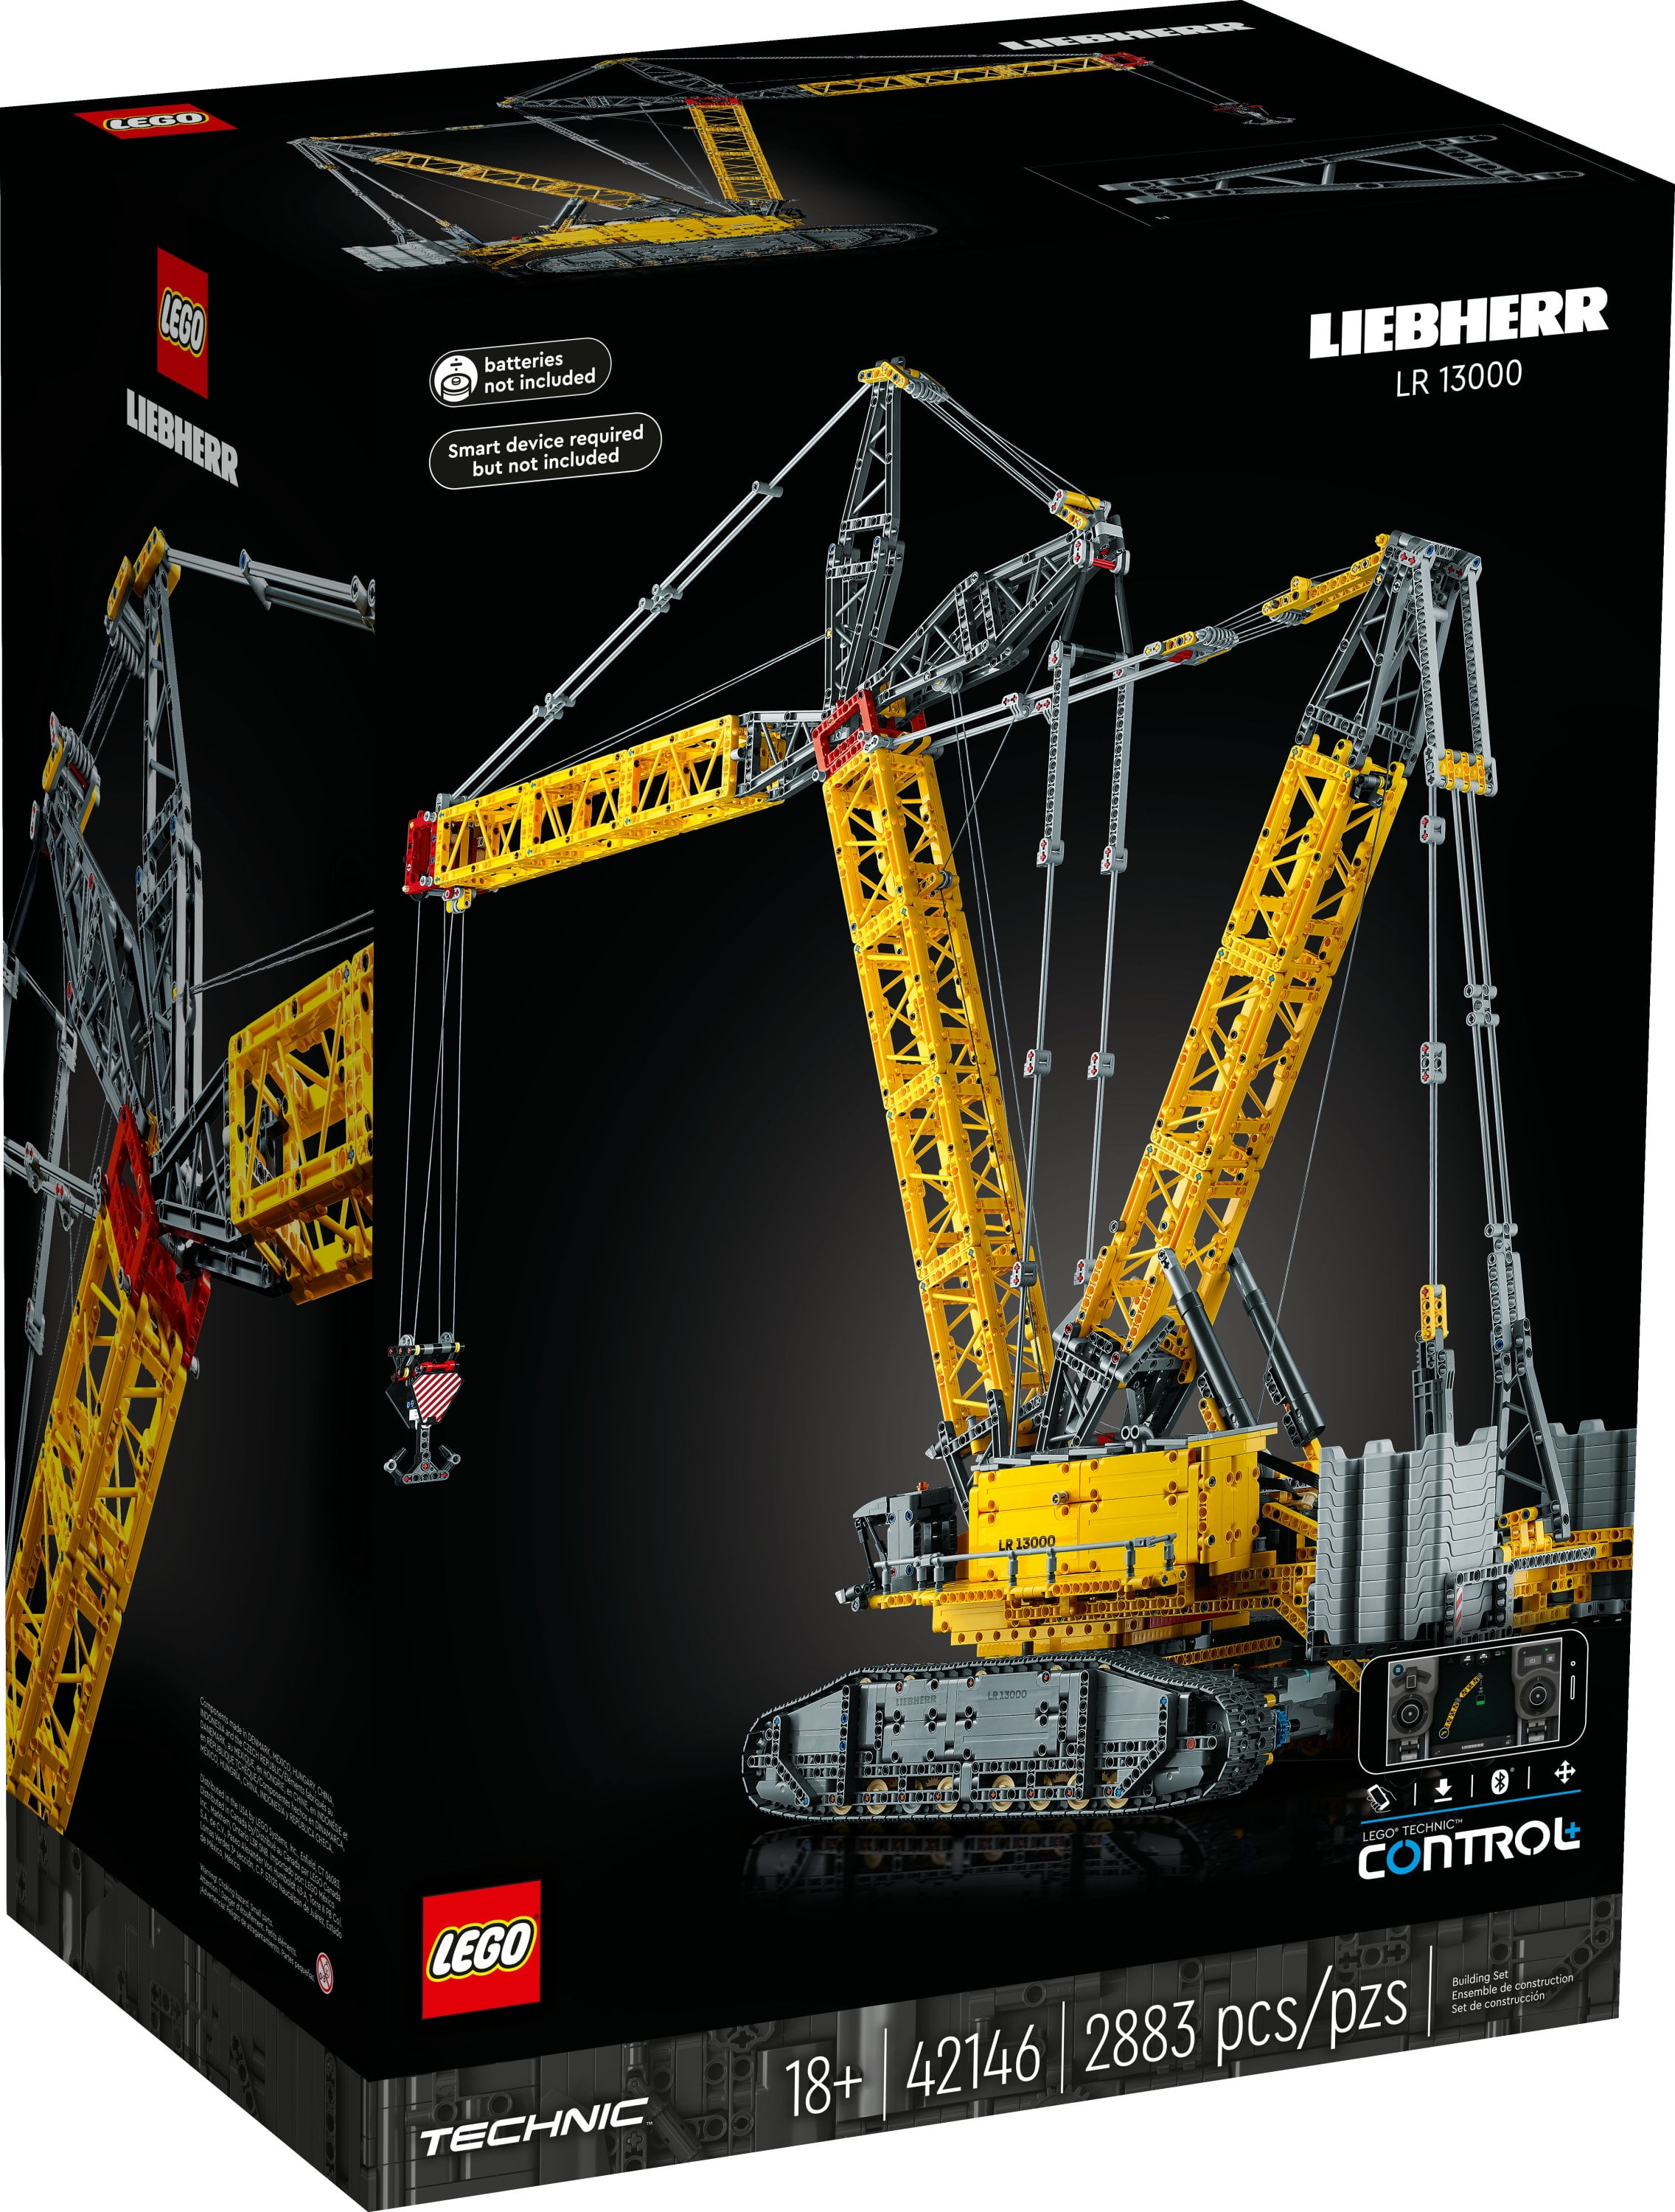 LEGO Technic 42146 La Grue sur Chenilles Liebherr LR 13000, Maquette E